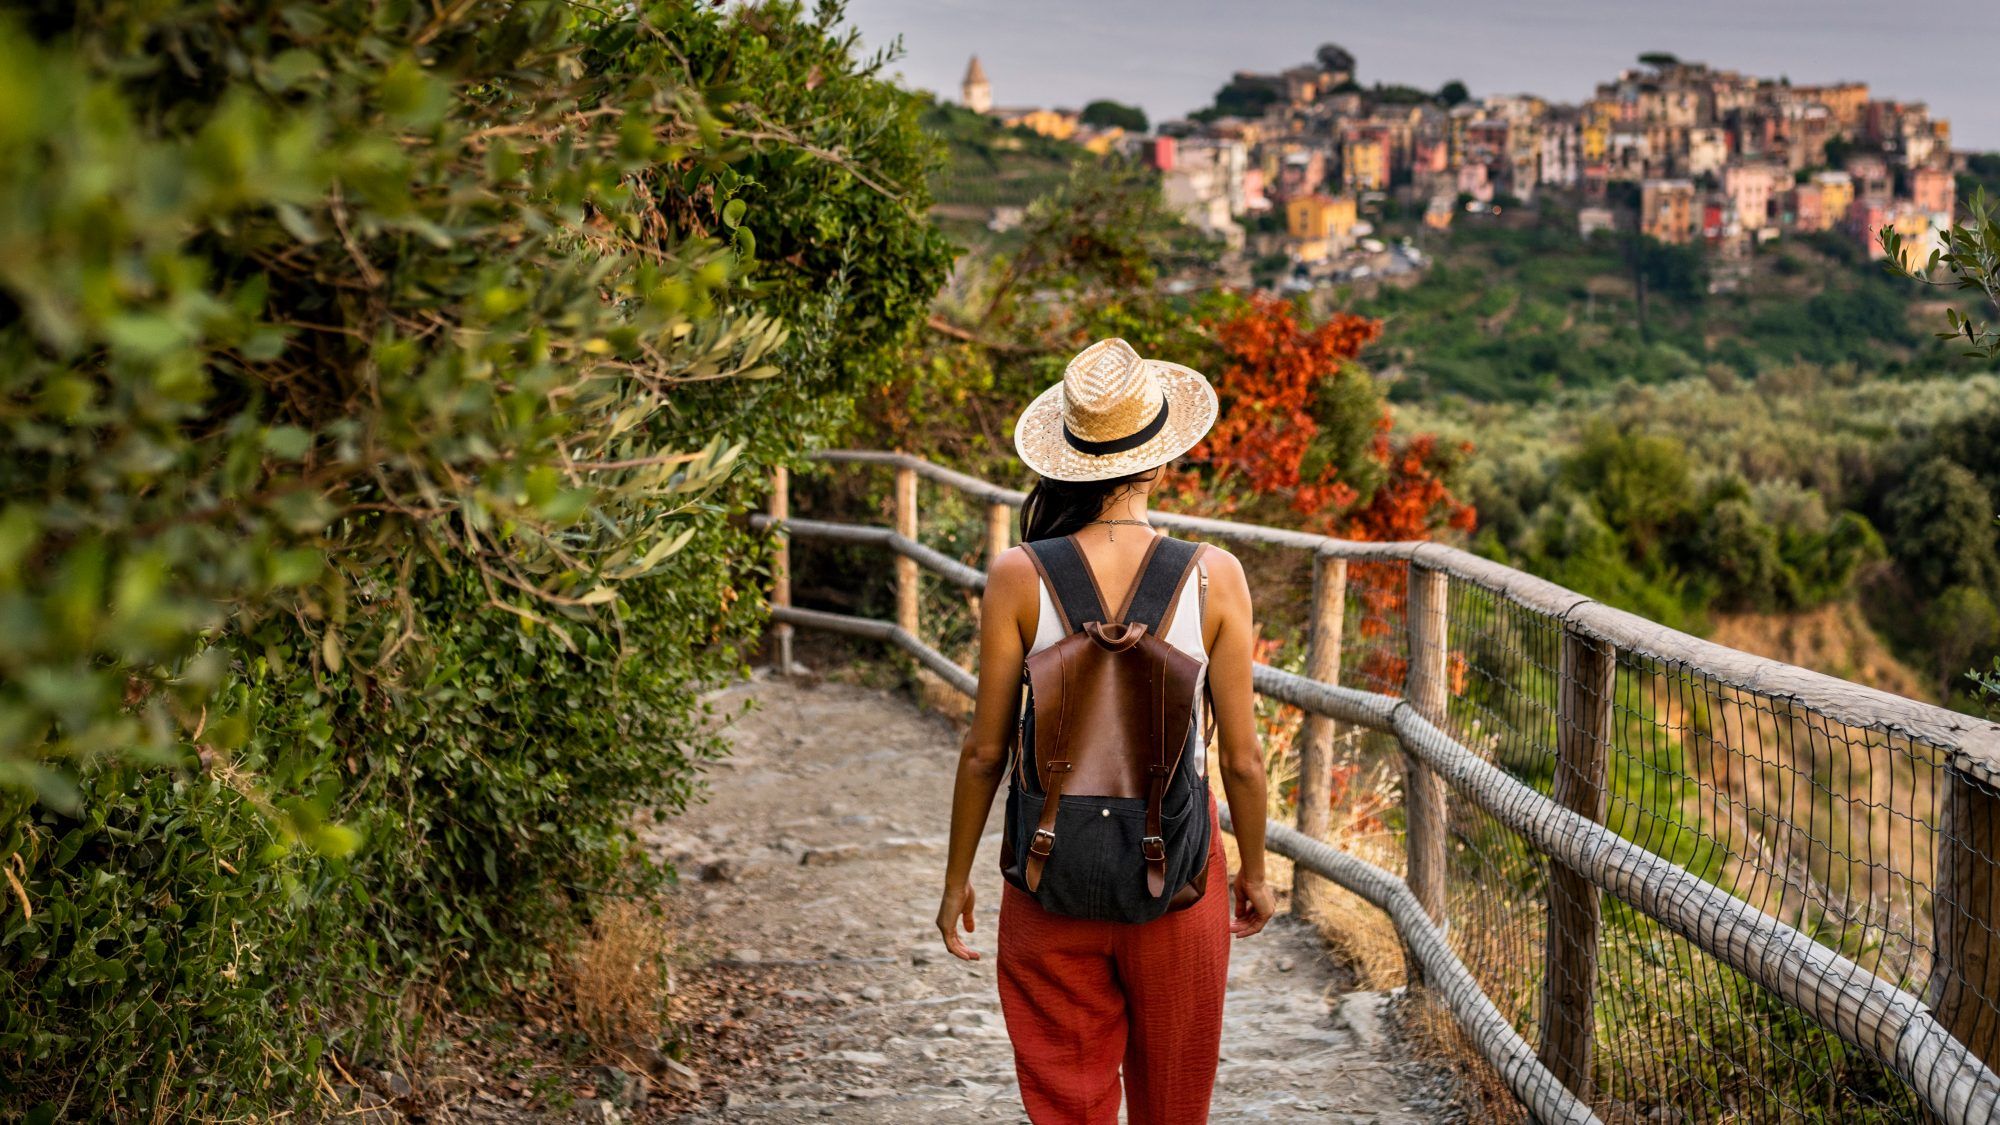 9 συμβουλές για να ταξιδέψετε μόνος σας από έναν έμπειρο ταξιδιώτη